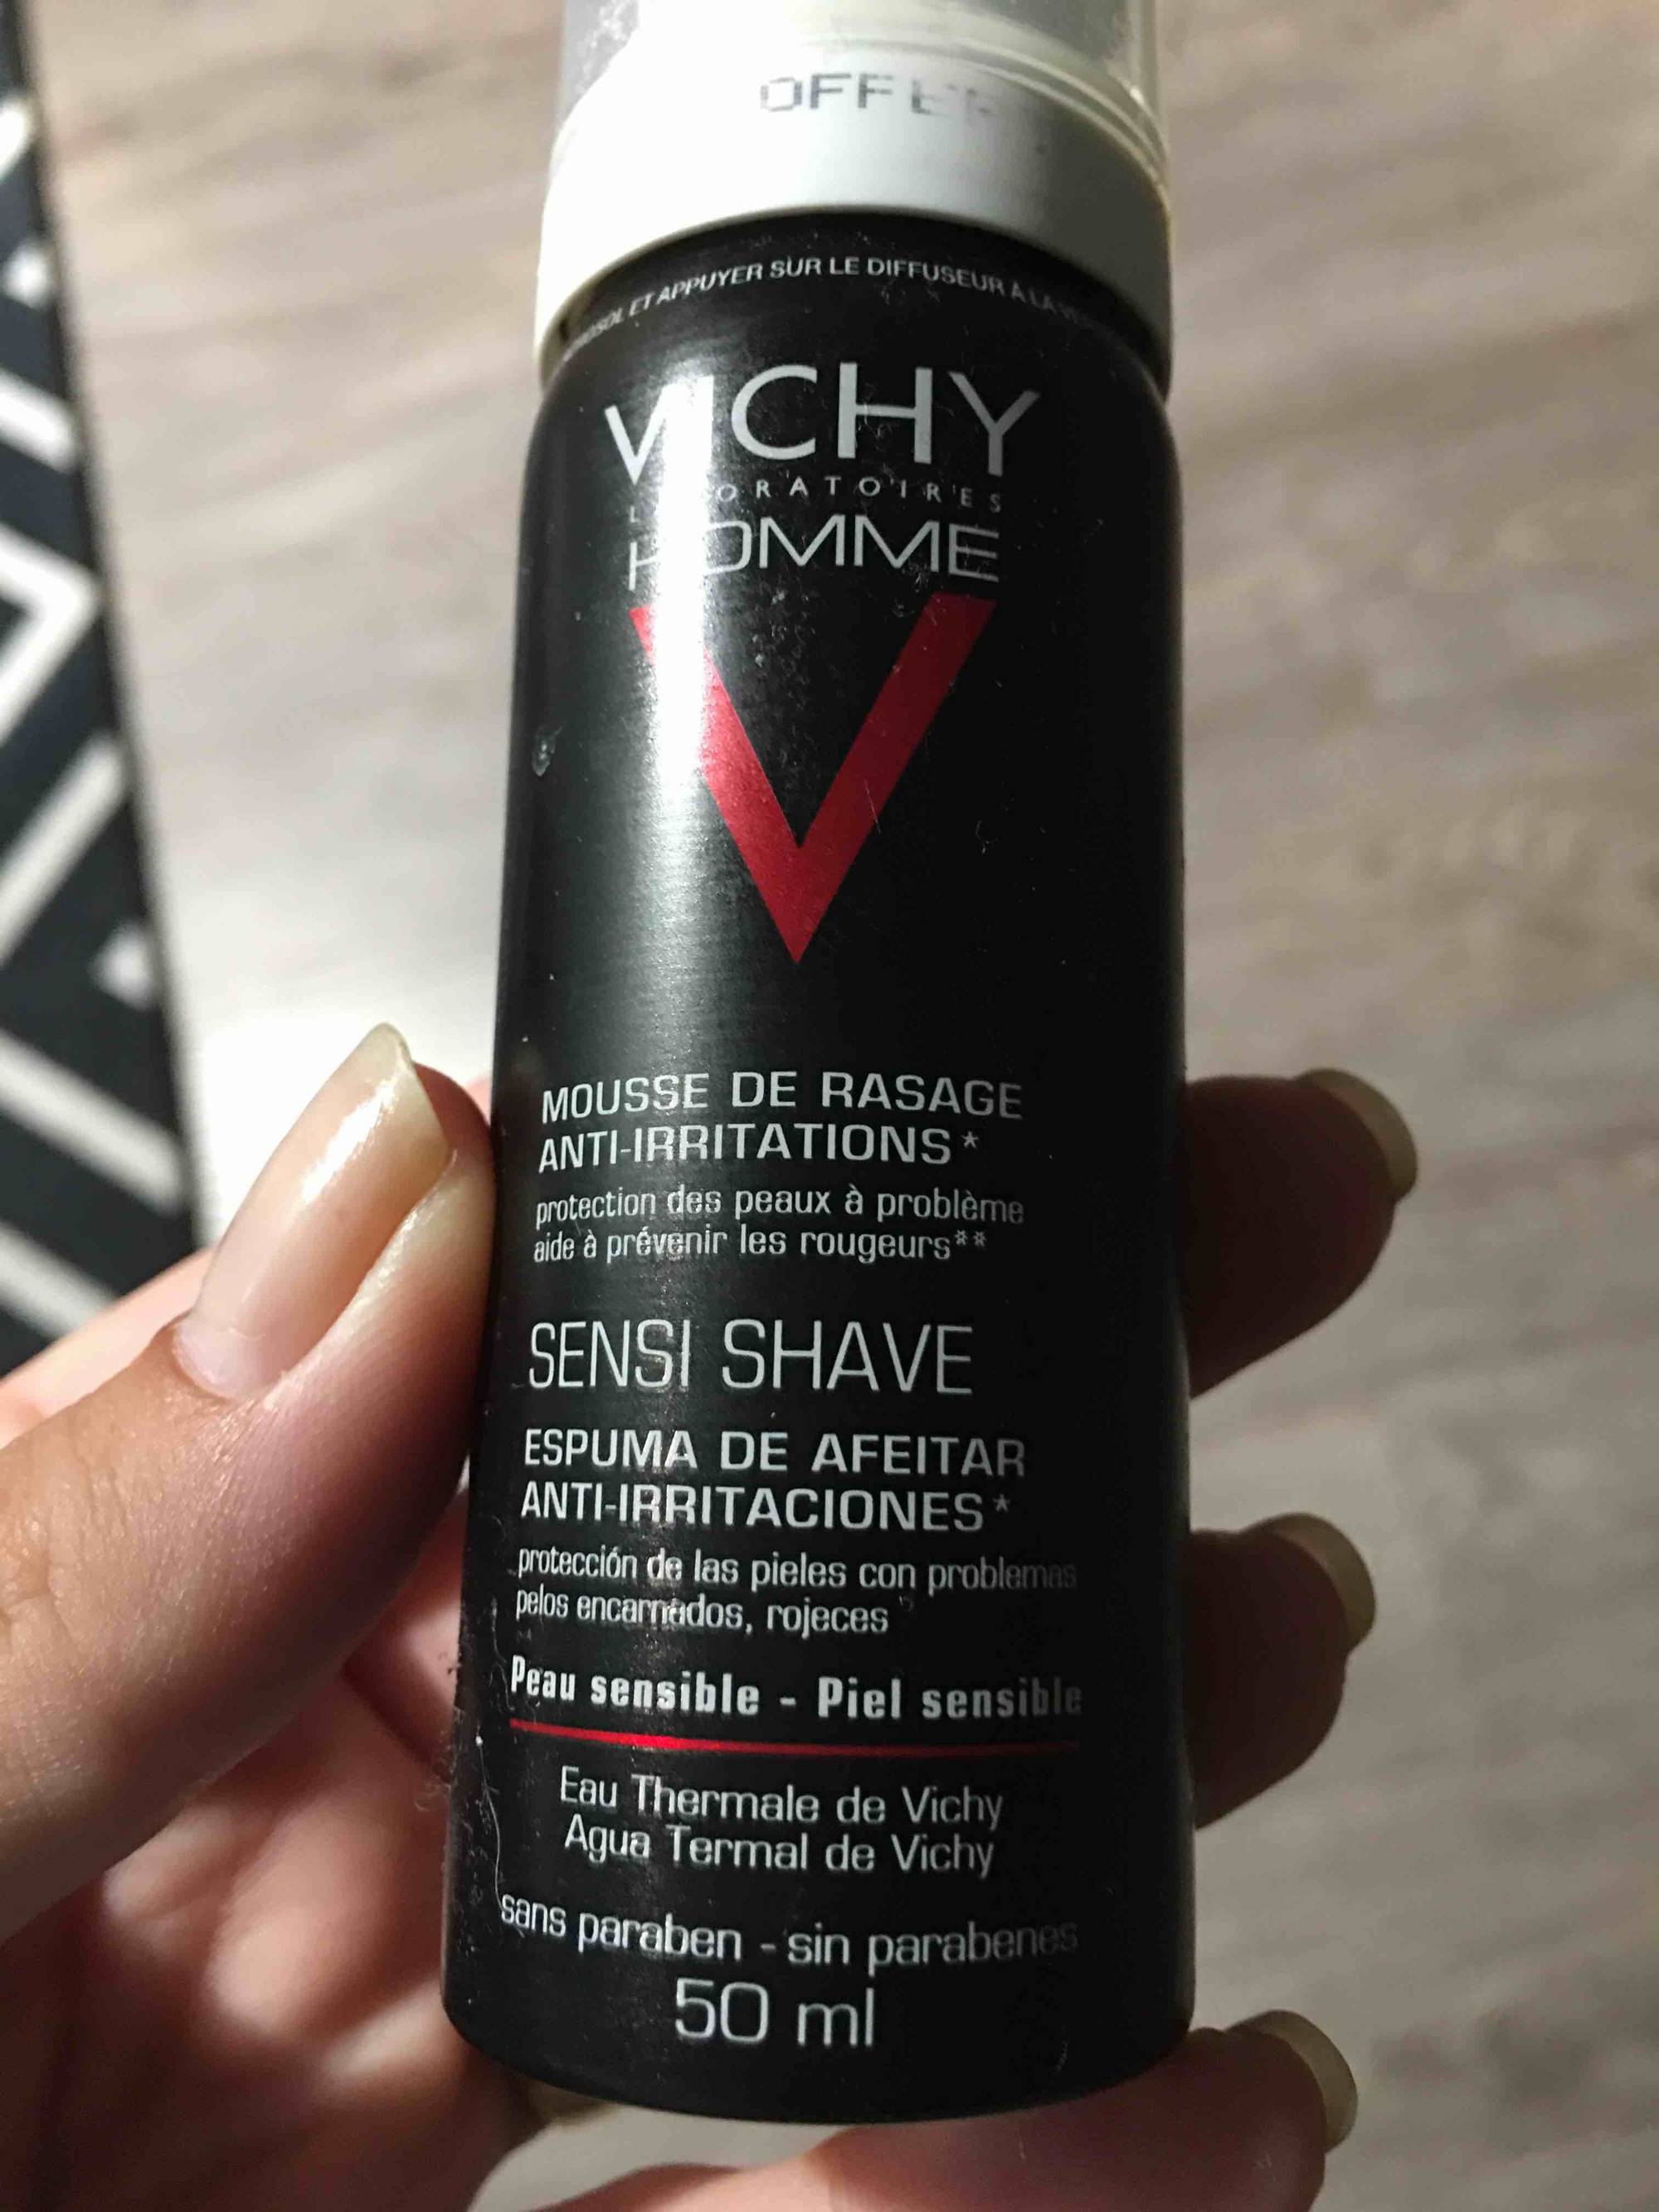 VICHY - Homme sensi shave - Mousse de rasage anti-irritations